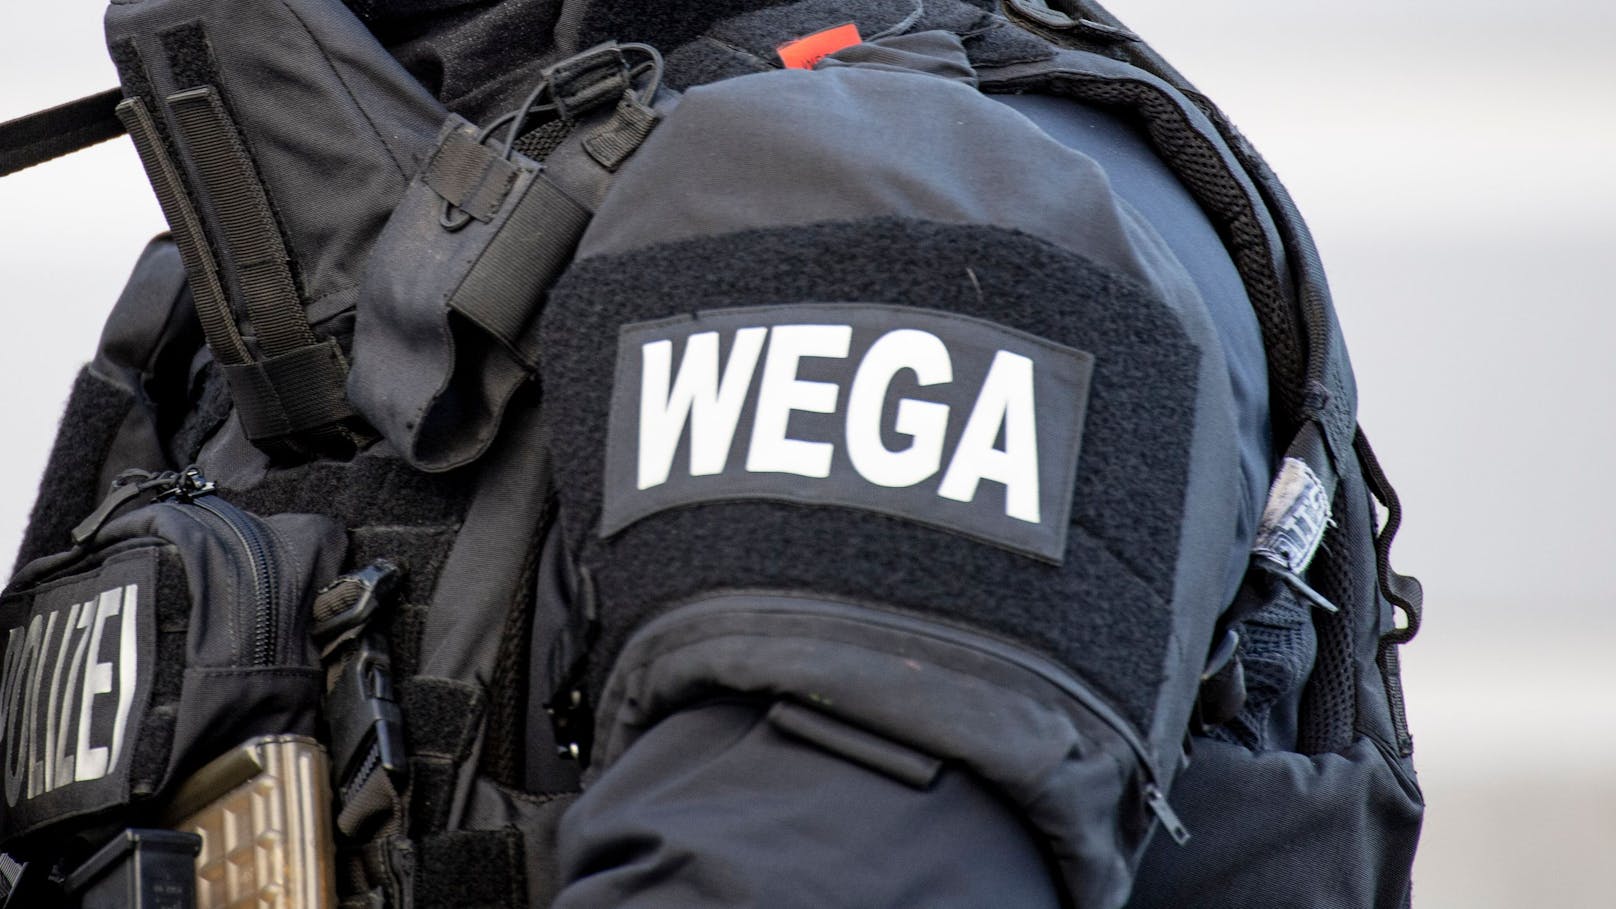 WEGA-Polizisten halfen, den Tobenden zu bändigen. (Symbolbild)